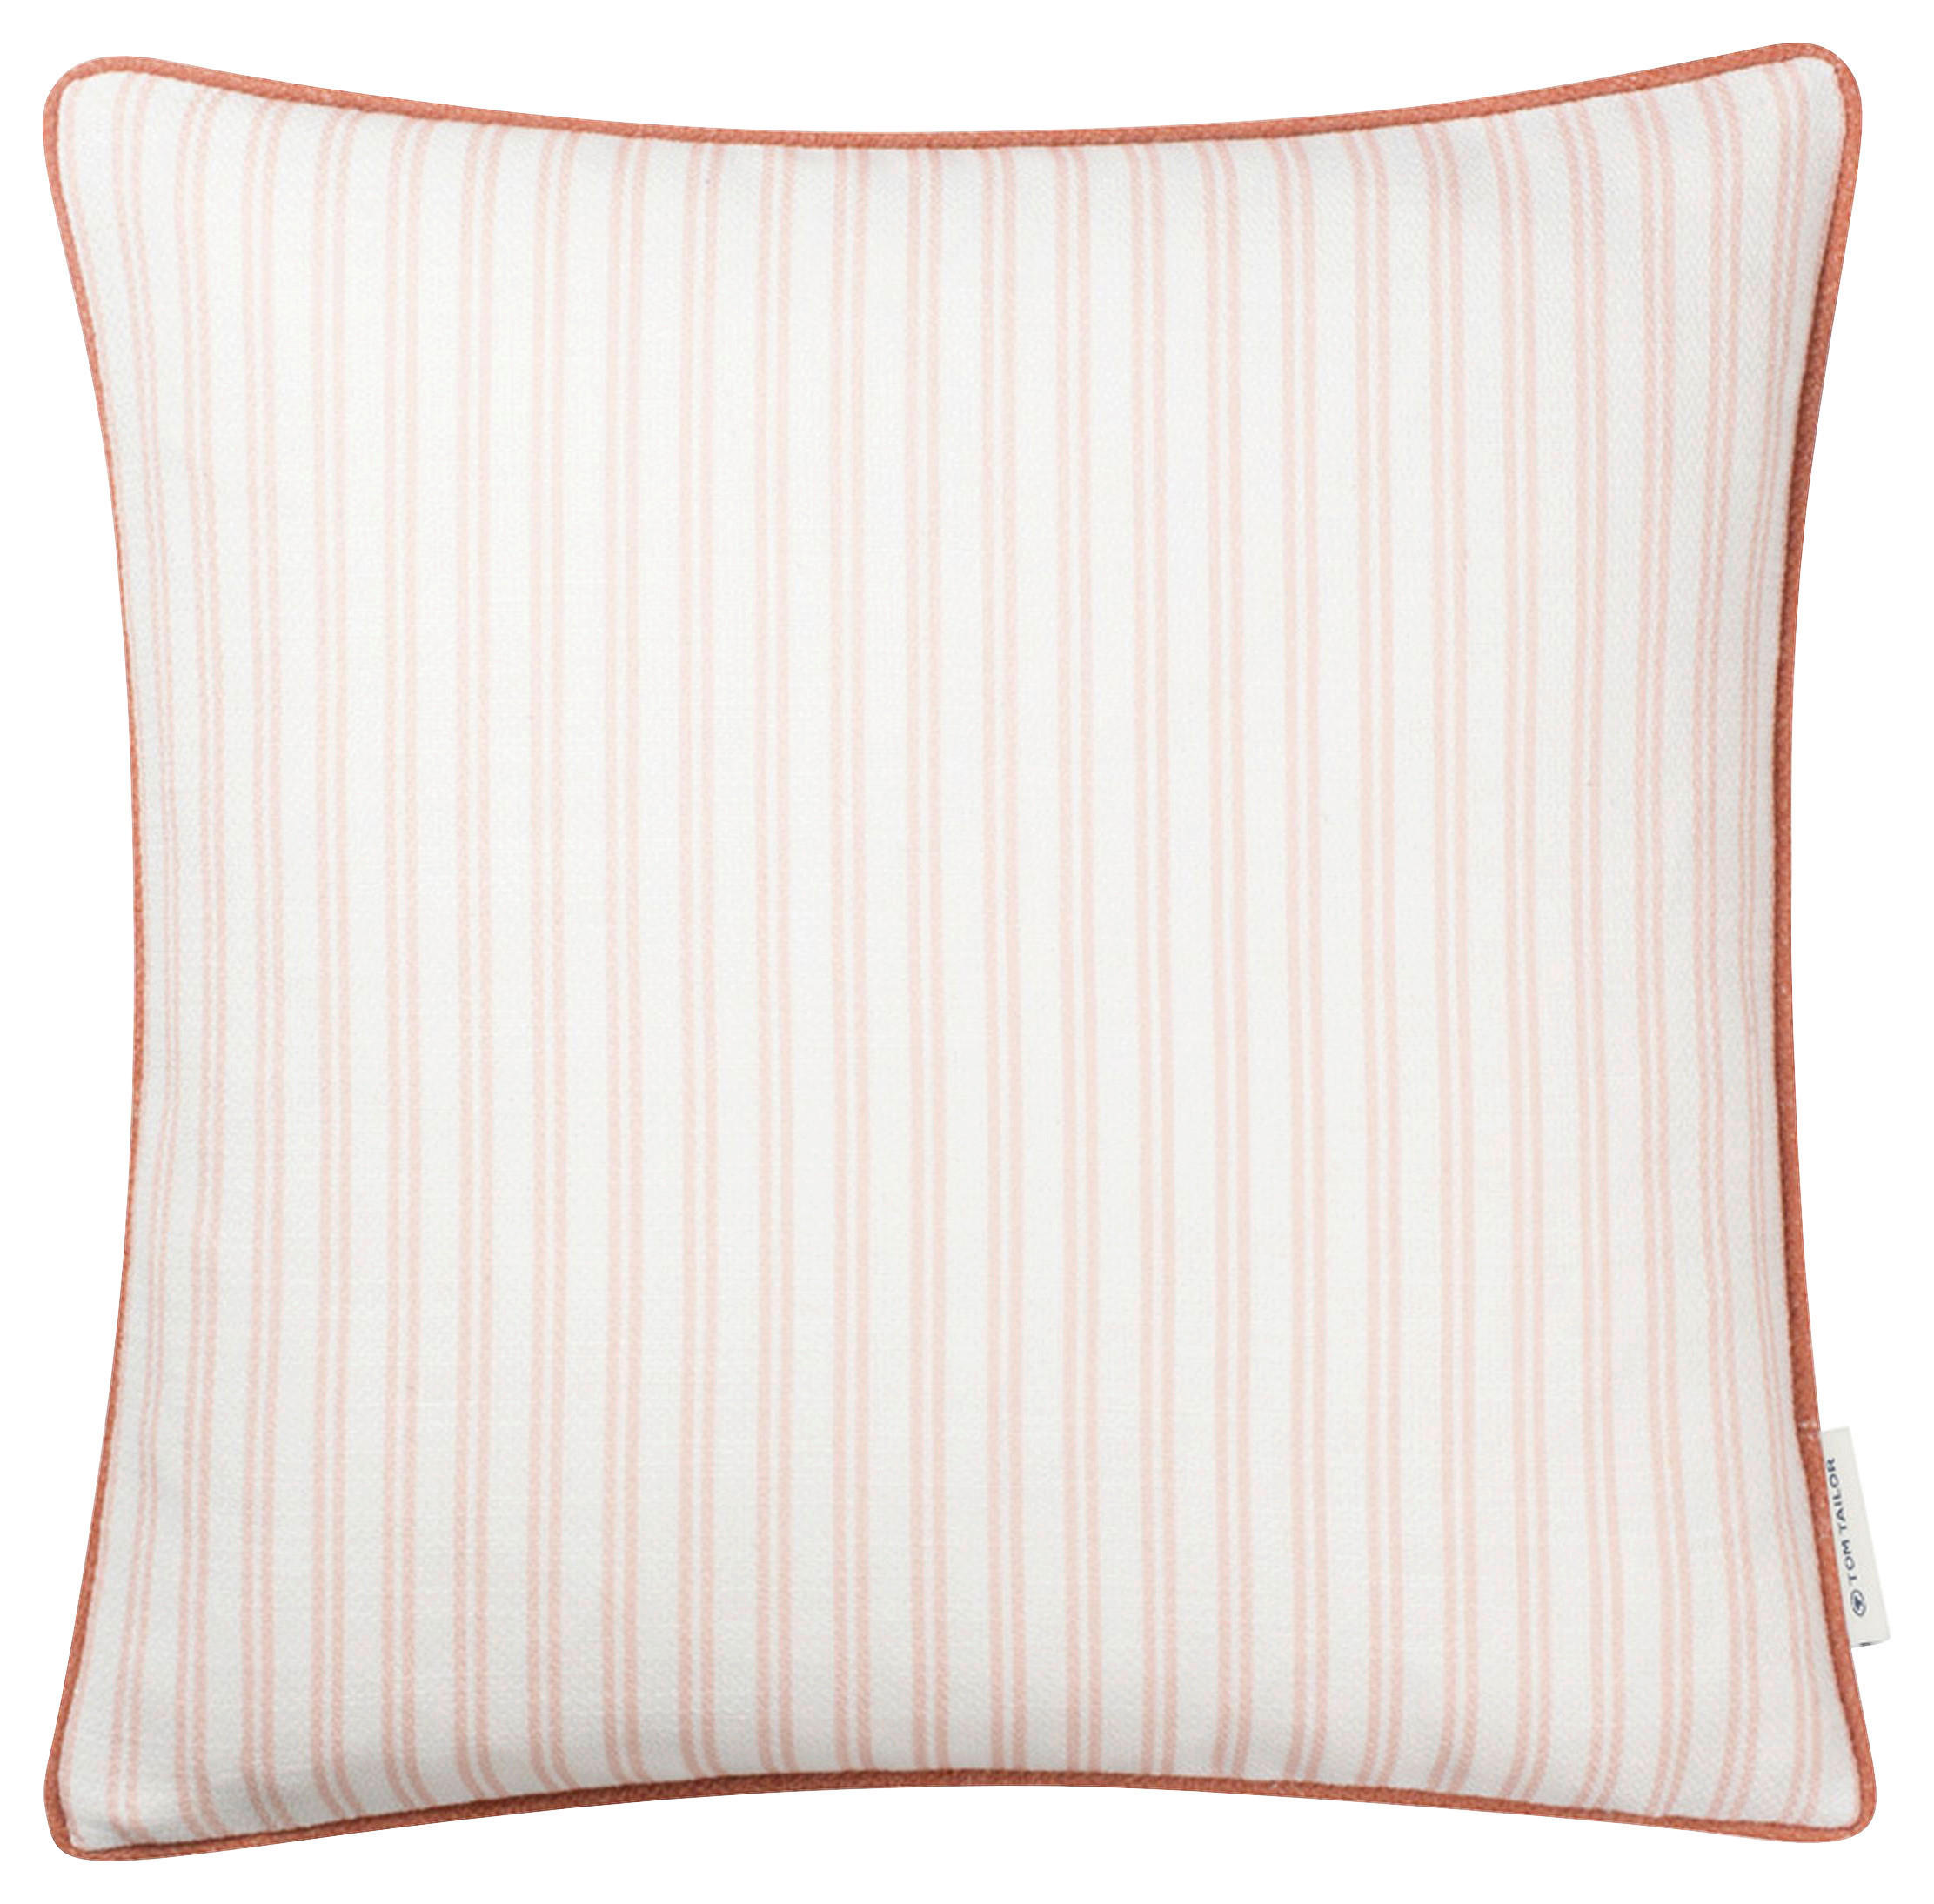 KISSENHÜLLE Little Stripes 45/45 cm  - Beige/Orange, KONVENTIONELL, Textil (45/45cm) - Tom Tailor